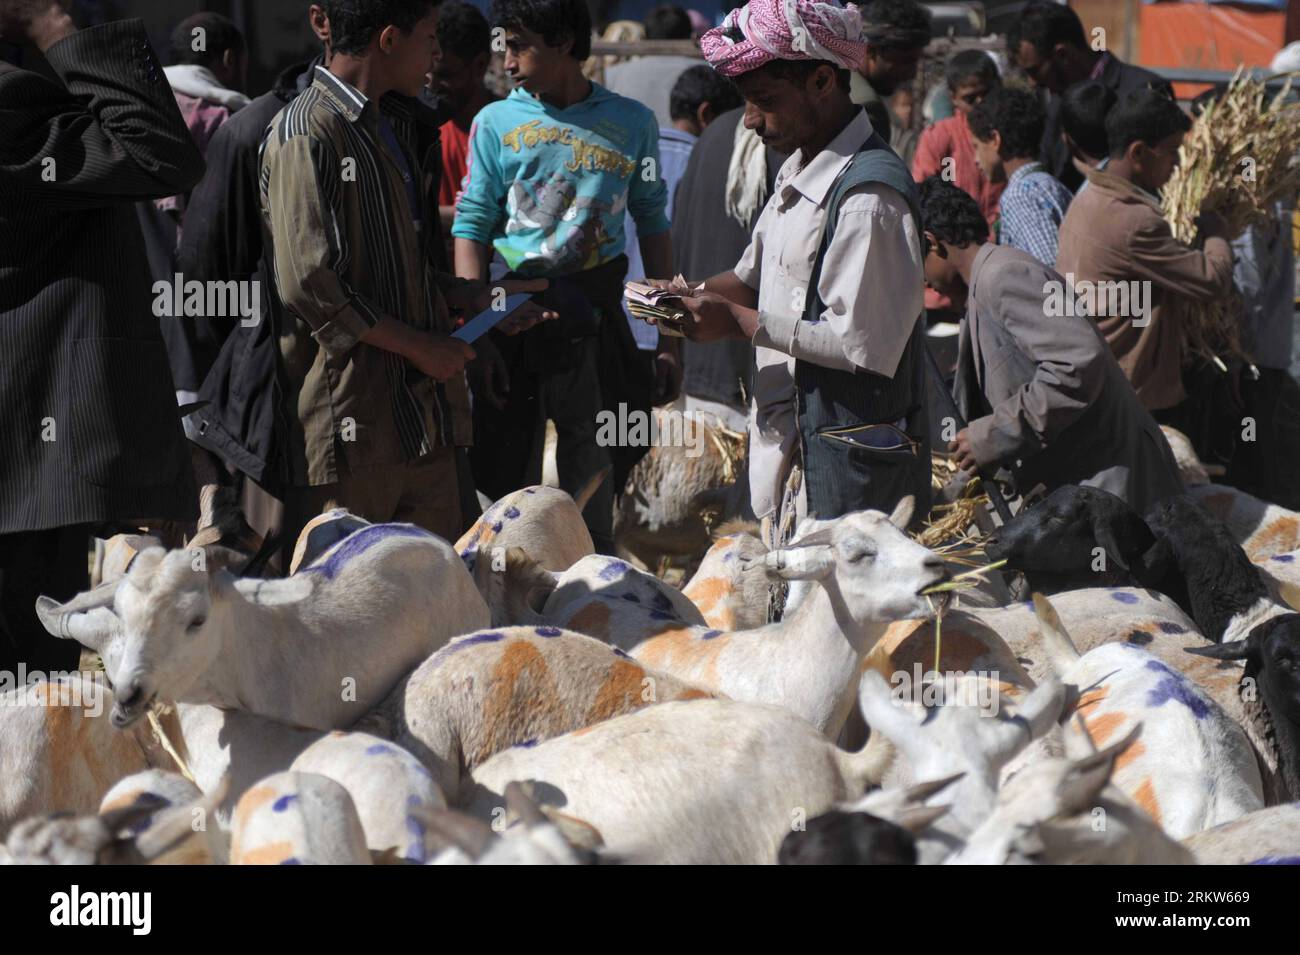 Bildnummer : 58622365 Datum : 23.10.2012 Copyright : imago/Xinhua (121023) -- SANAA, 23 octobre 2012 (Xinhua) -- des Yéménites choisissent des chèvres sur un marché de bétail à Yarim City, à 150 km au sud de la capitale Sanaa, le 23 octobre 2012, alors que le festival de l'Aïd Al-Adha approche. Les musulmans du monde entier se préparent à célébrer l’Aïd Al-Adha le 26 octobre, en abattant des chèvres, des moutons, des chameaux et du bétail. (Xinhua/Mohammed Mohammed) (cl) YEMEN-SANAA-EID AL-ADHA-PREPARATION PUBLICATIONxNOTxINxCHN Wirtschaft Landwirtschaft religion Islam Opfer Opfertier Viehzucht Tier Markt Viehmarkt x0x xdd 2012 quer premiumd 58622365 D Banque D'Images